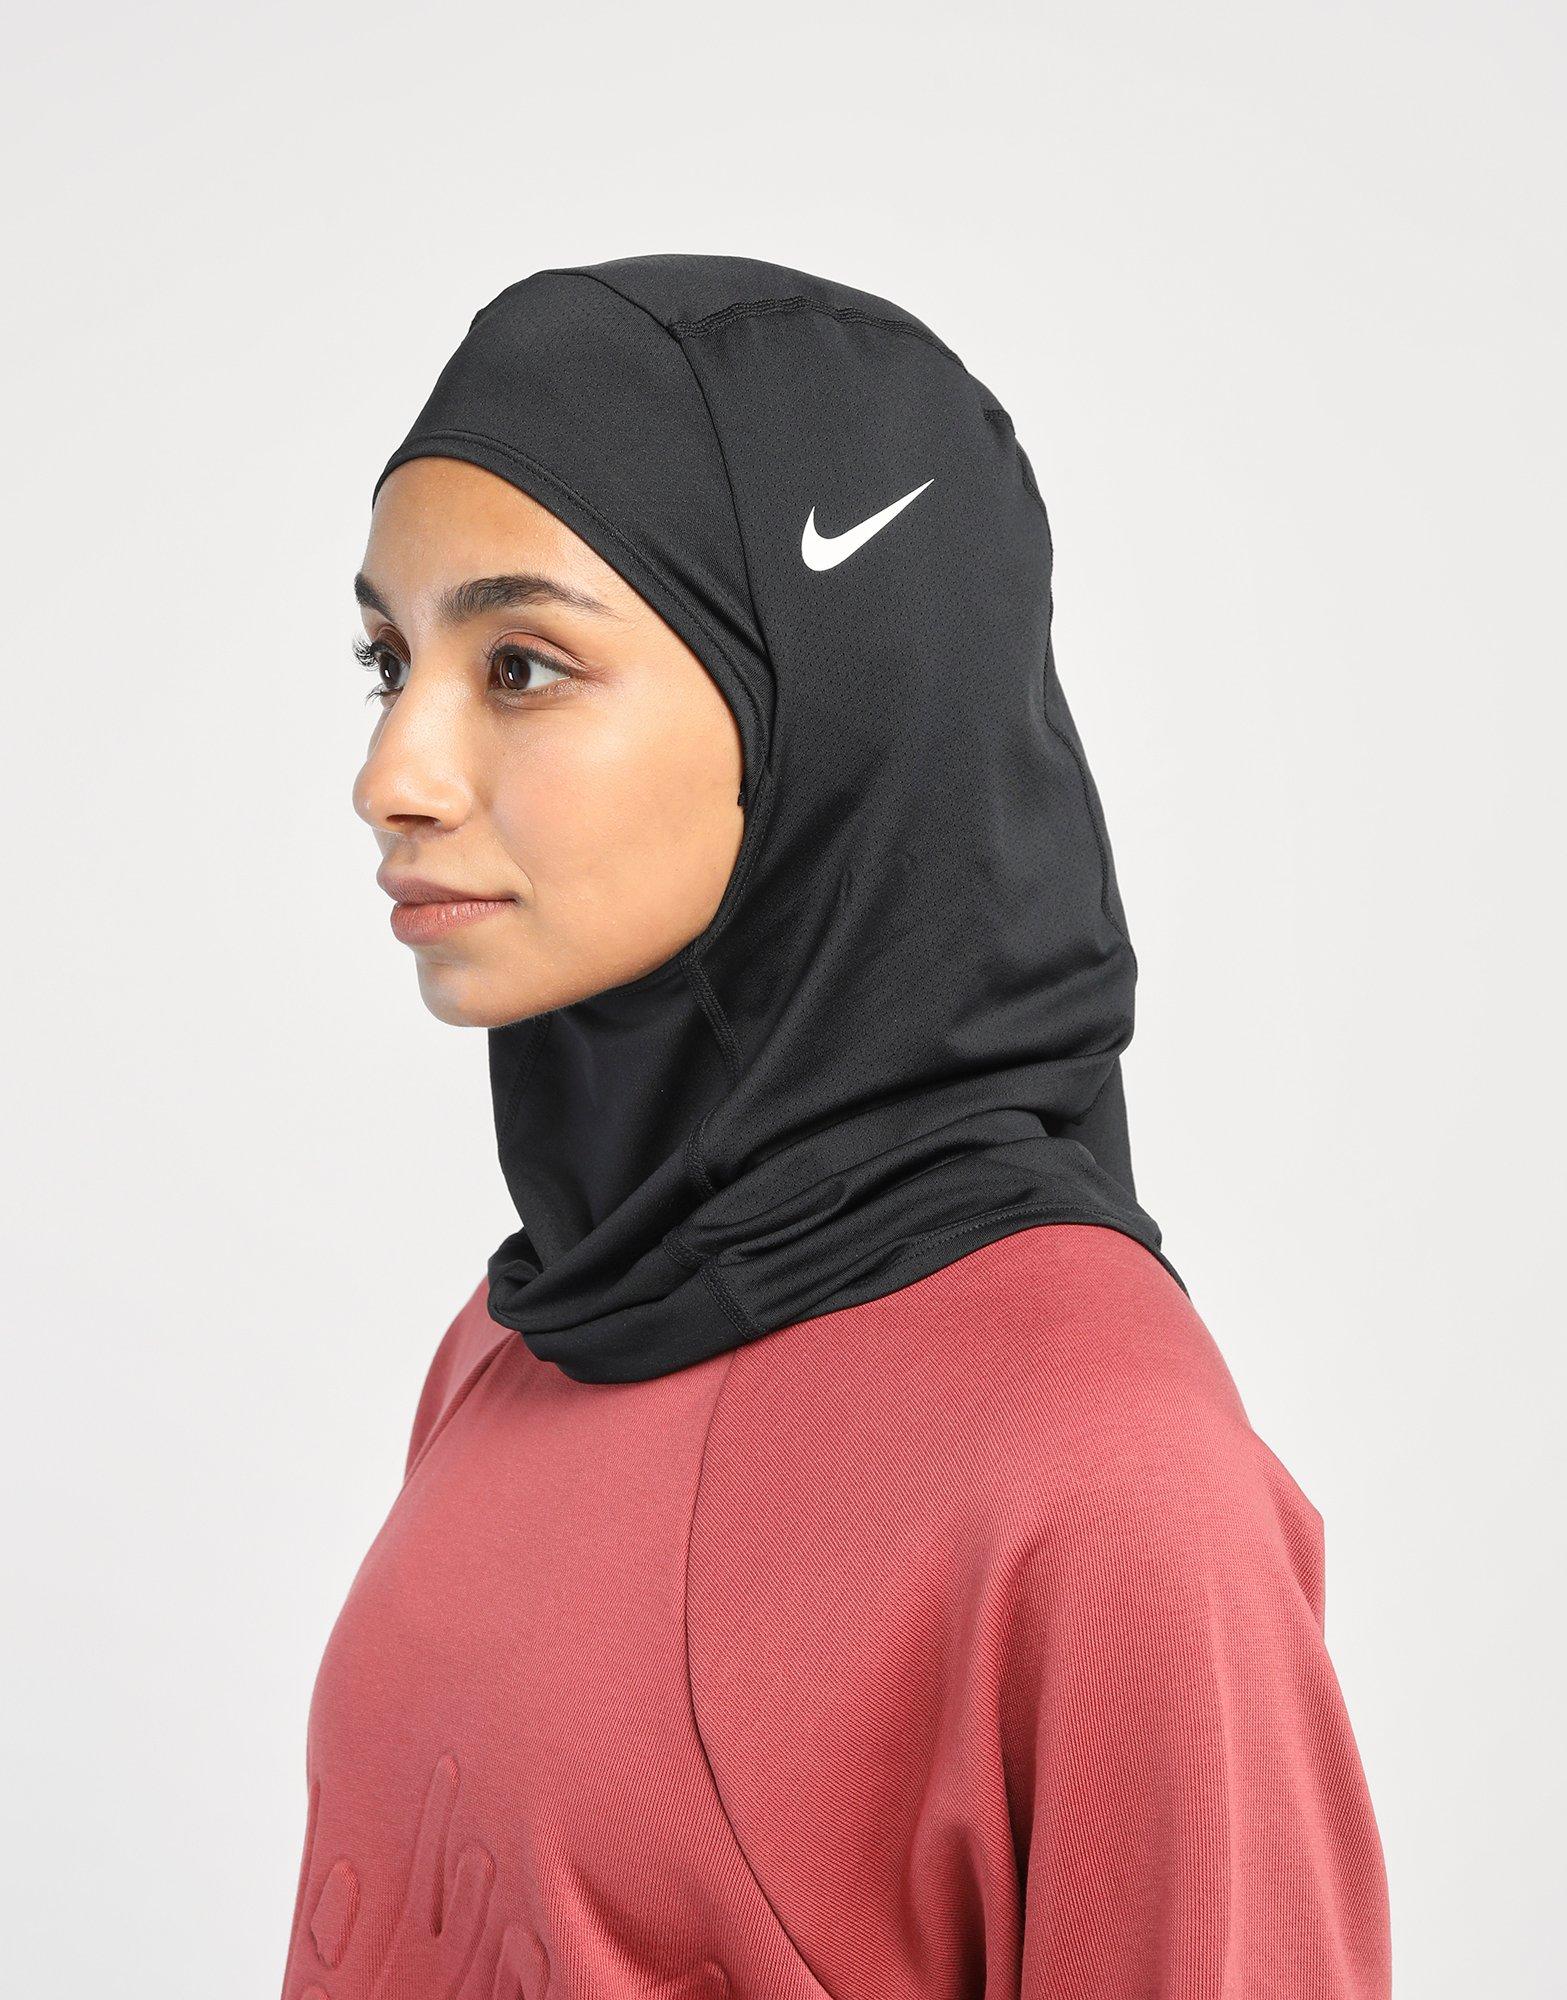 Buy Nike Pro Hijab 2.0